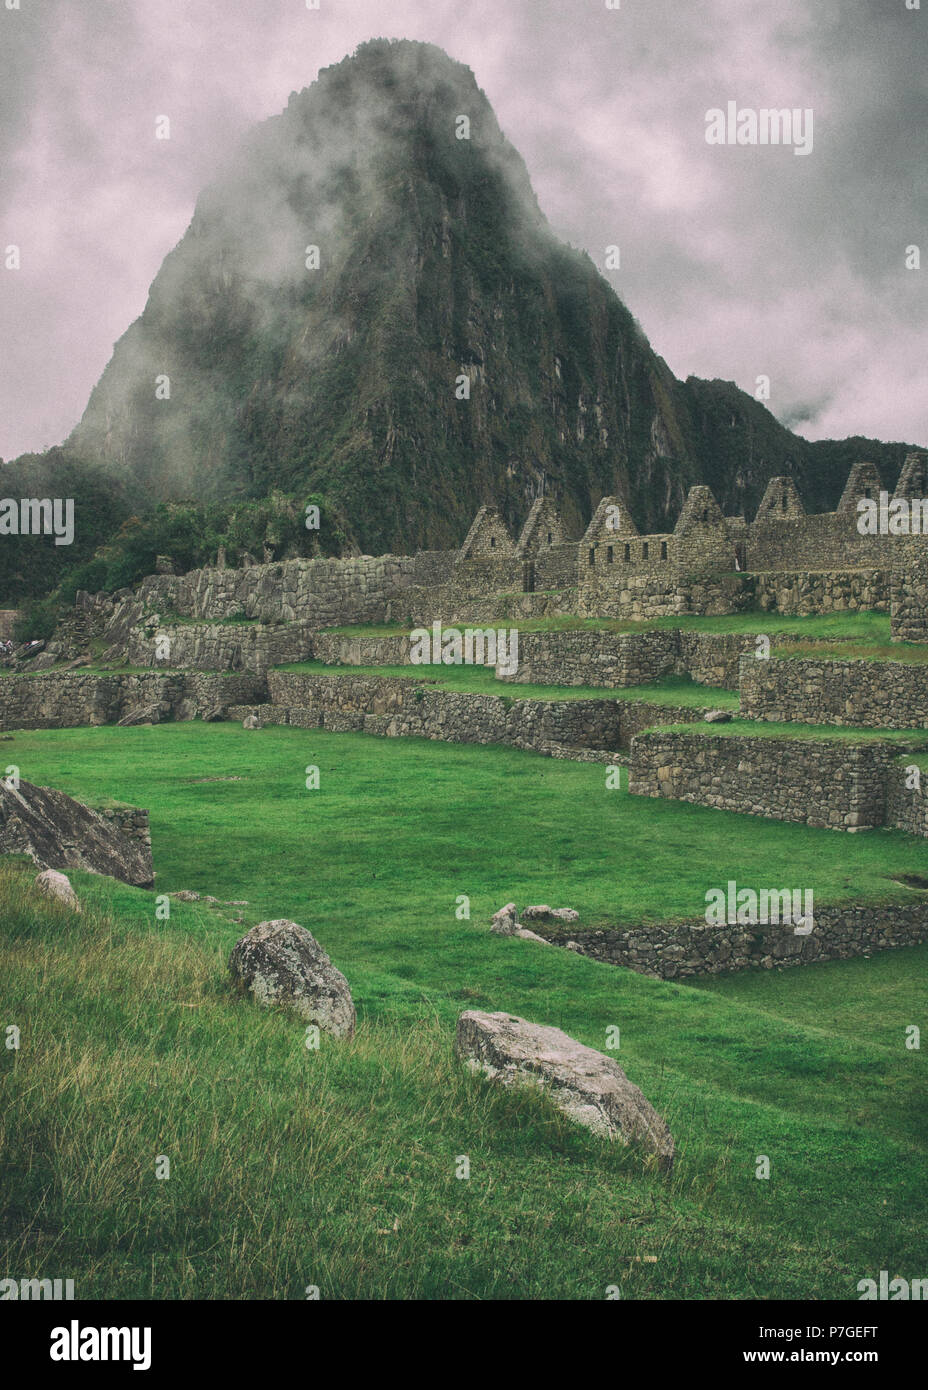 La giornata inizia con la nebbia intensa in aria in Machu Picchu. Lo storico sito archeologico in una misteriosa atmosfera. Bella immagine di sfondo. Foto Stock